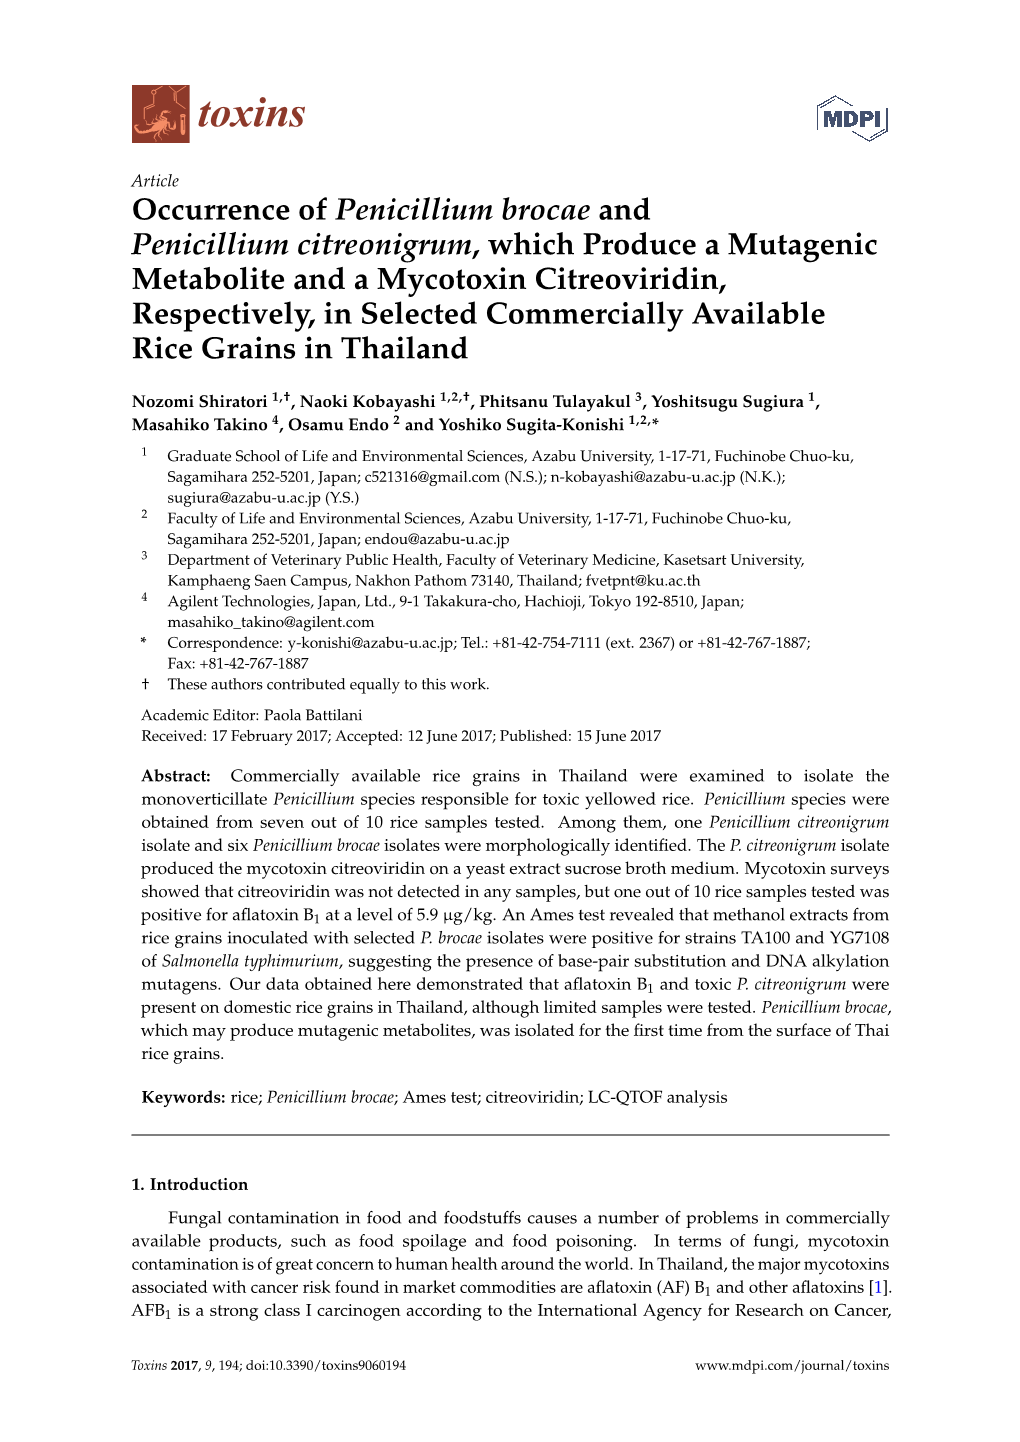 Occurrence of Penicillium Brocae and Penicillium Citreonigrum, Which